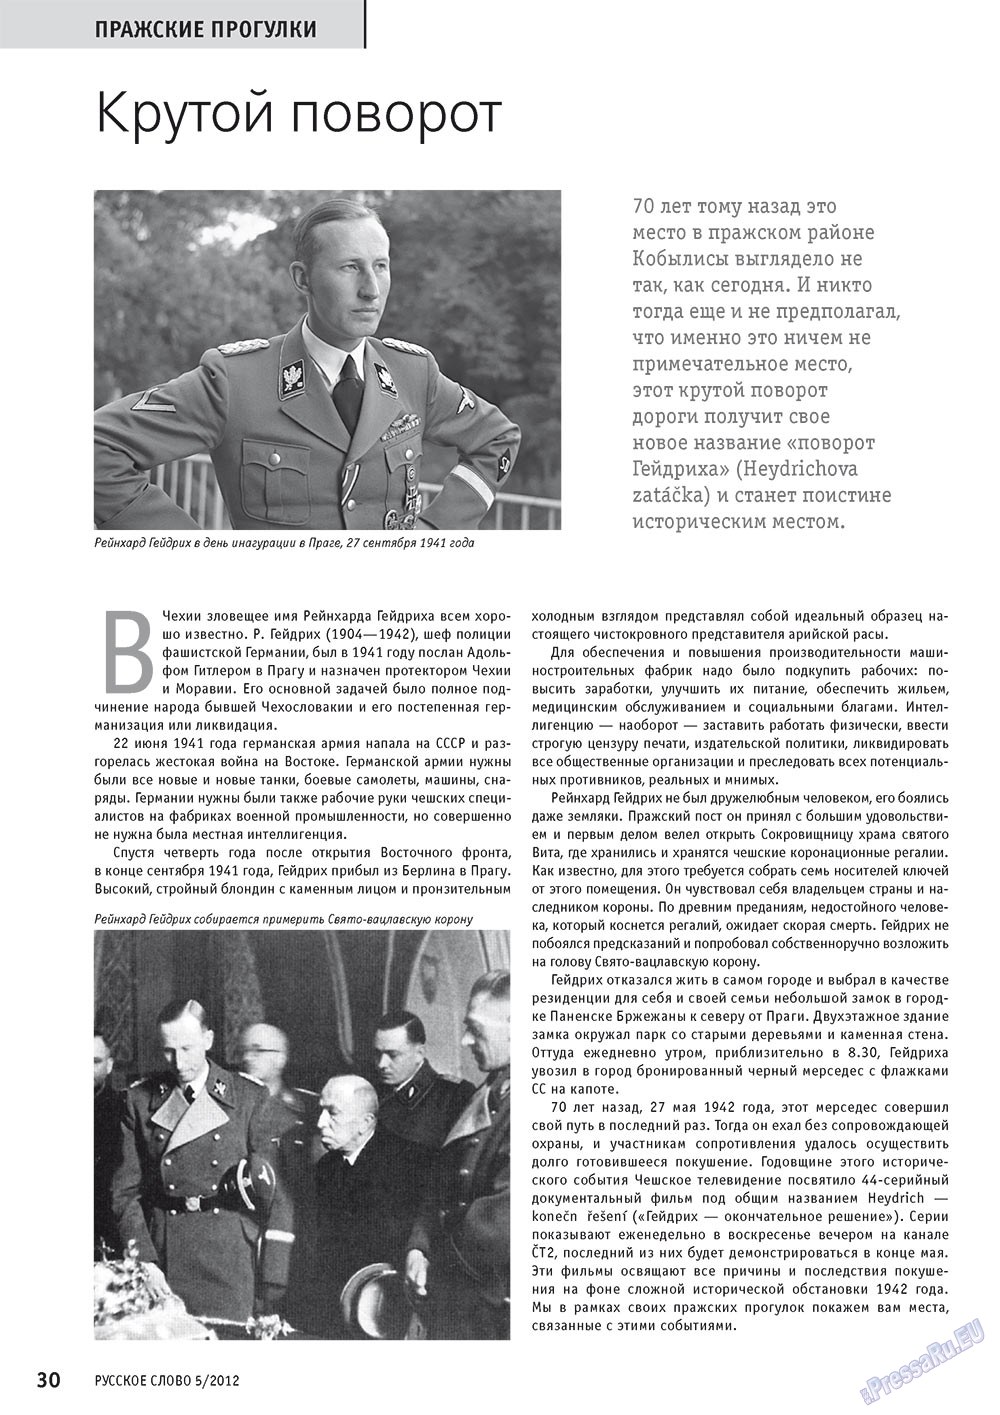 Русское слово, журнал. 2012 №5 стр.30